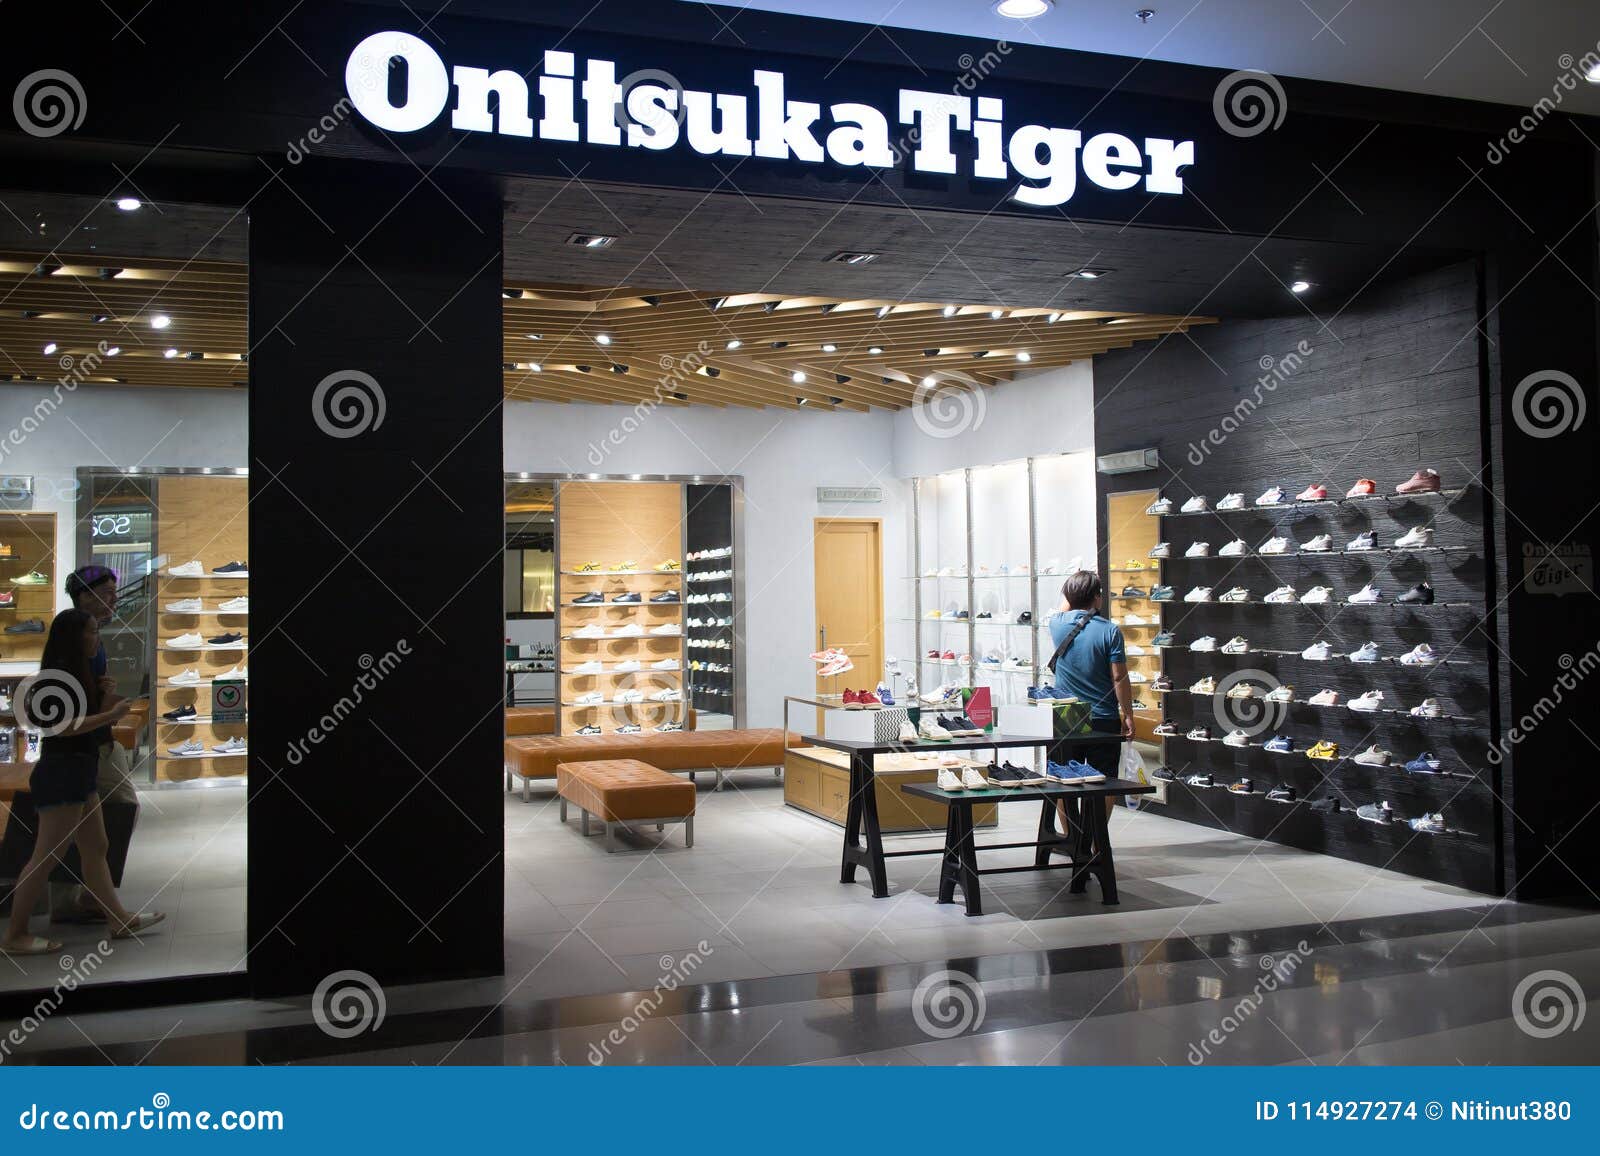 onitsuka tiger shops